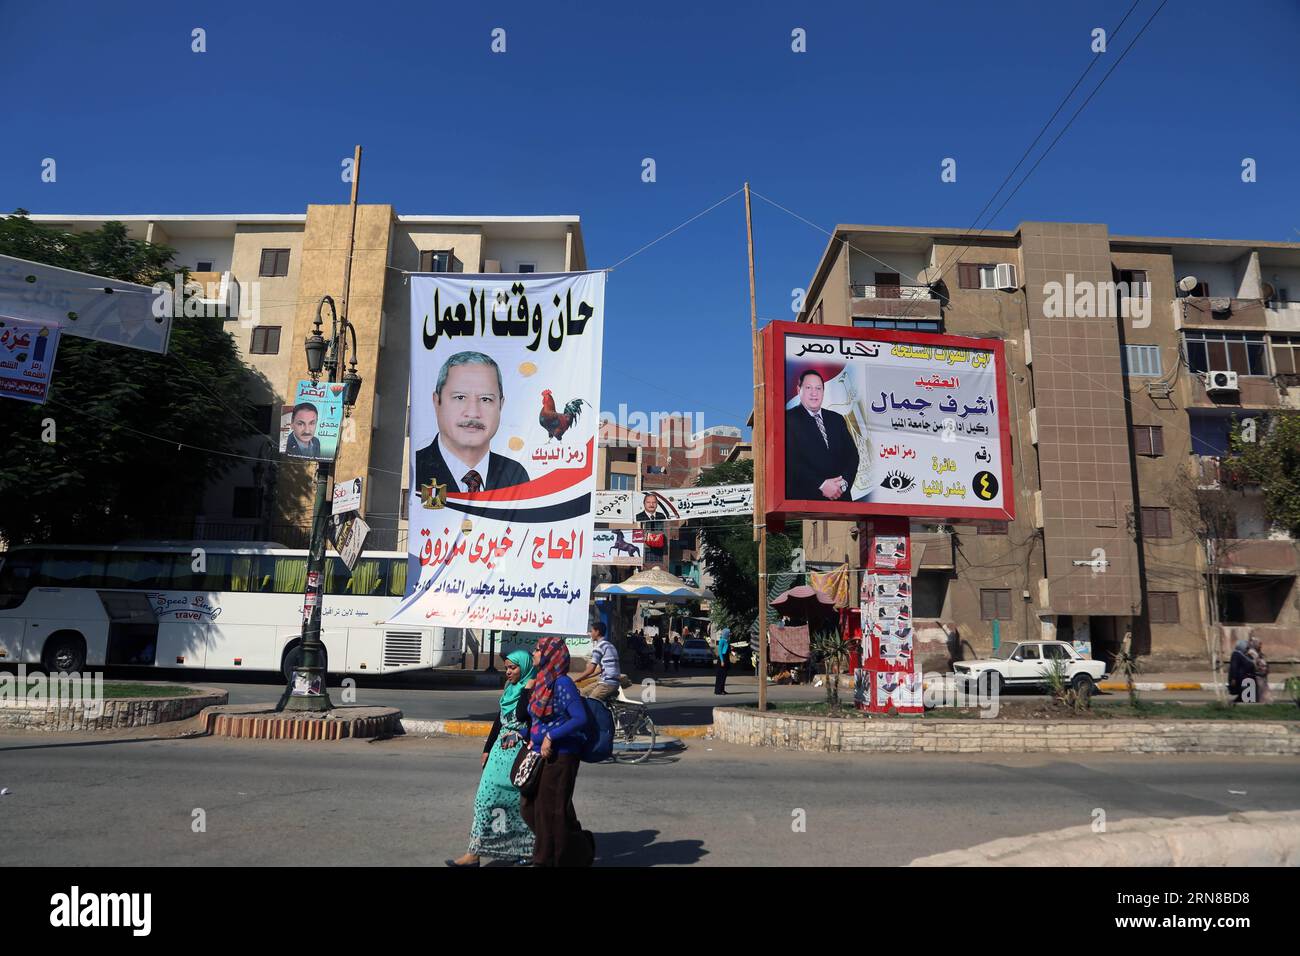 (151015) -- MINYA, 15. Oktober 2015 -- Ägyptische Frauen laufen auf Banner von Kandidaten für die anstehenden Parlamentswahlen im Stadtzentrum von El-Minya, Ägypten, am 15. Oktober 2015. Die lang erwarteten Parlamentswahlen in Ägypten werden in zwei Phasen durchgeführt, die sich auf die 27 Provinzen des Landes erstrecken. Die erste Phase, die 14 Provinzen umfasst, findet am 18. Und 19. Oktober statt, die zweite Phase, die die übrigen 13 Provinzen am 22. Und 23. November umfasst. ) ÄGYPTEN-MINYA-PARLAMENTSWAHL AhmedxGomaa PUBLICATIONxNOTxINxCHN Minya OKT 15 2015 Ägyptische Frauen laufen von Bewerbern für die bevorstehende parlamentarische ELECTIO Stockfoto